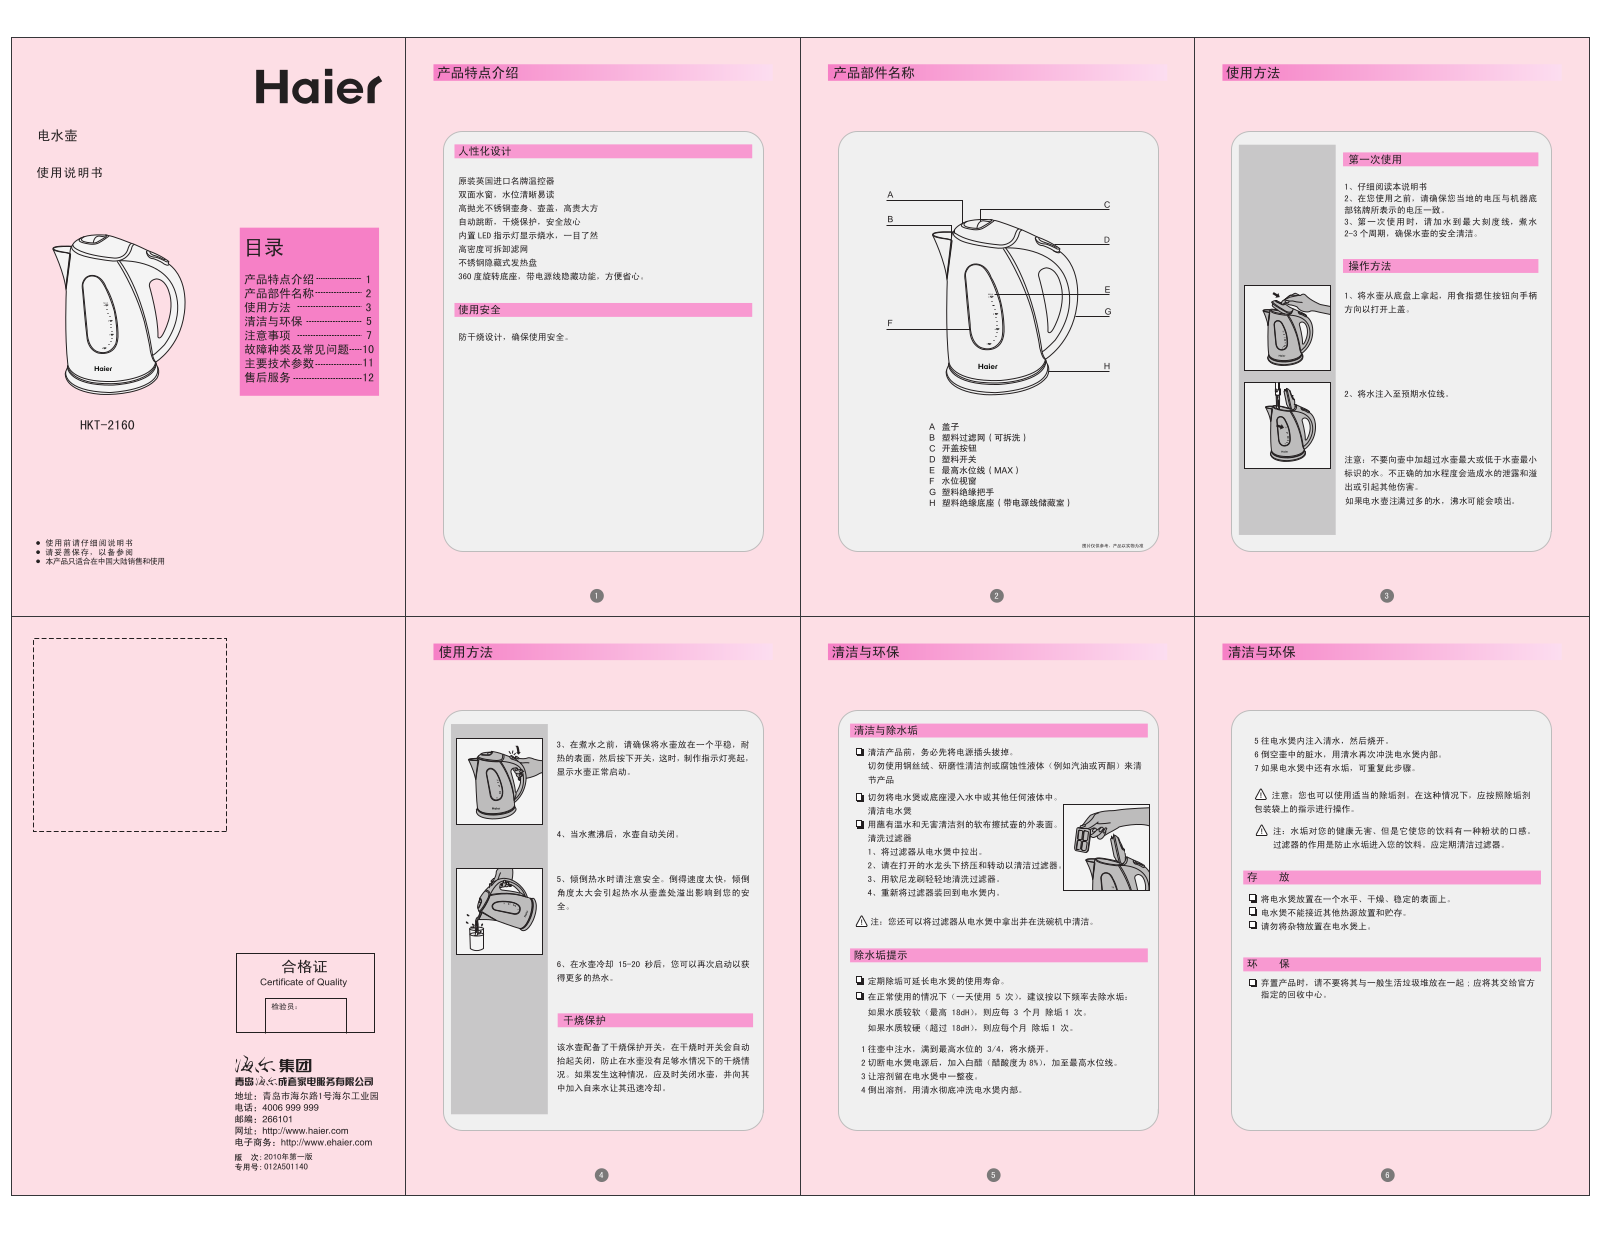 Haier HKT-2160 User Manual